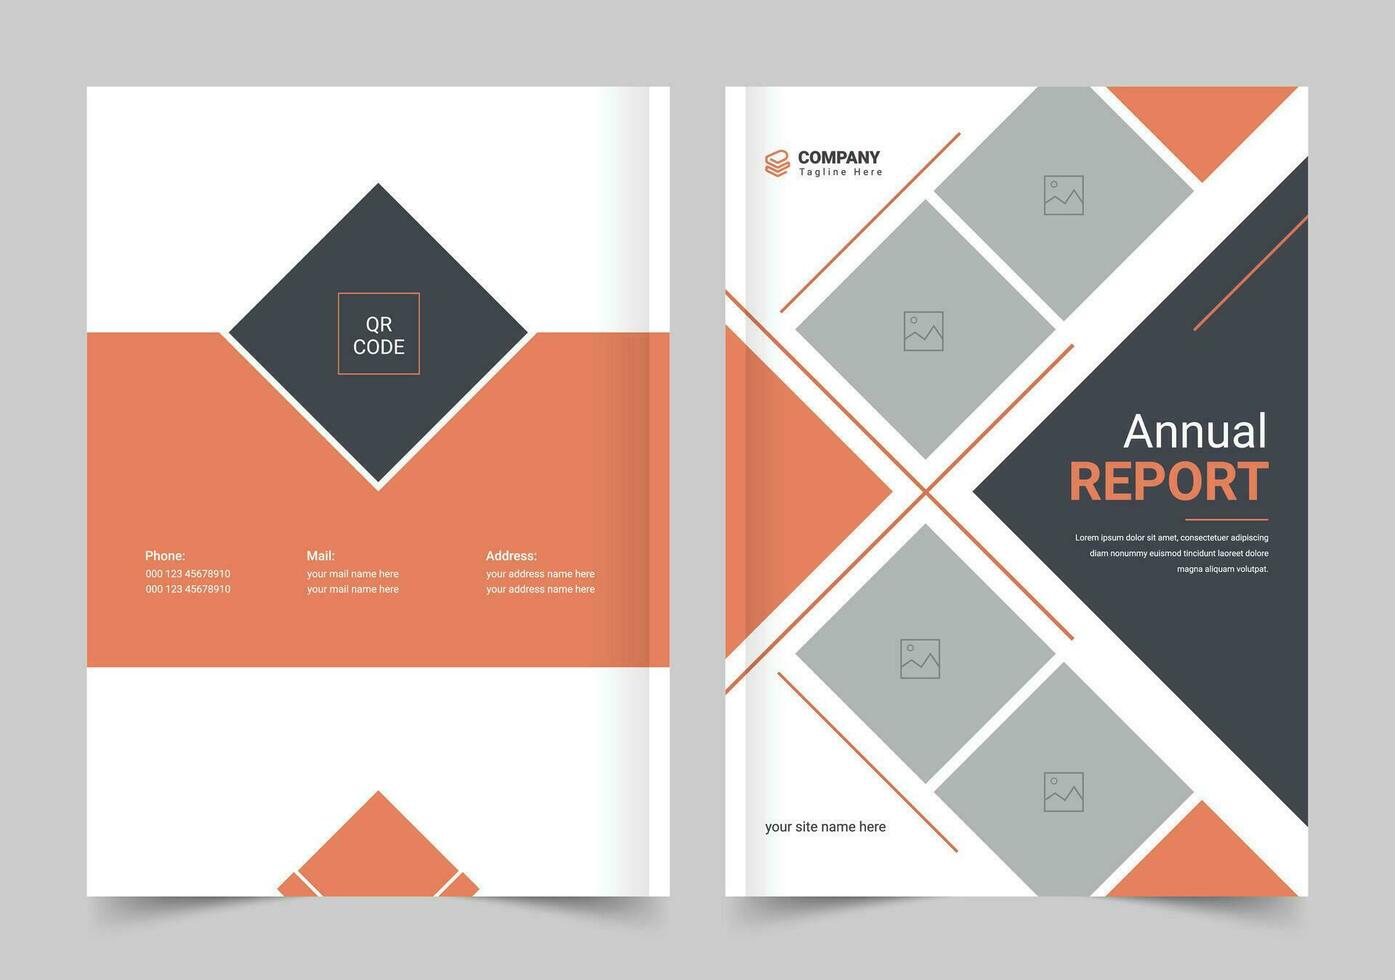 jährlich Bericht Startseite Design, Startseite Design zum Broschüre, jährlich Bericht vektor